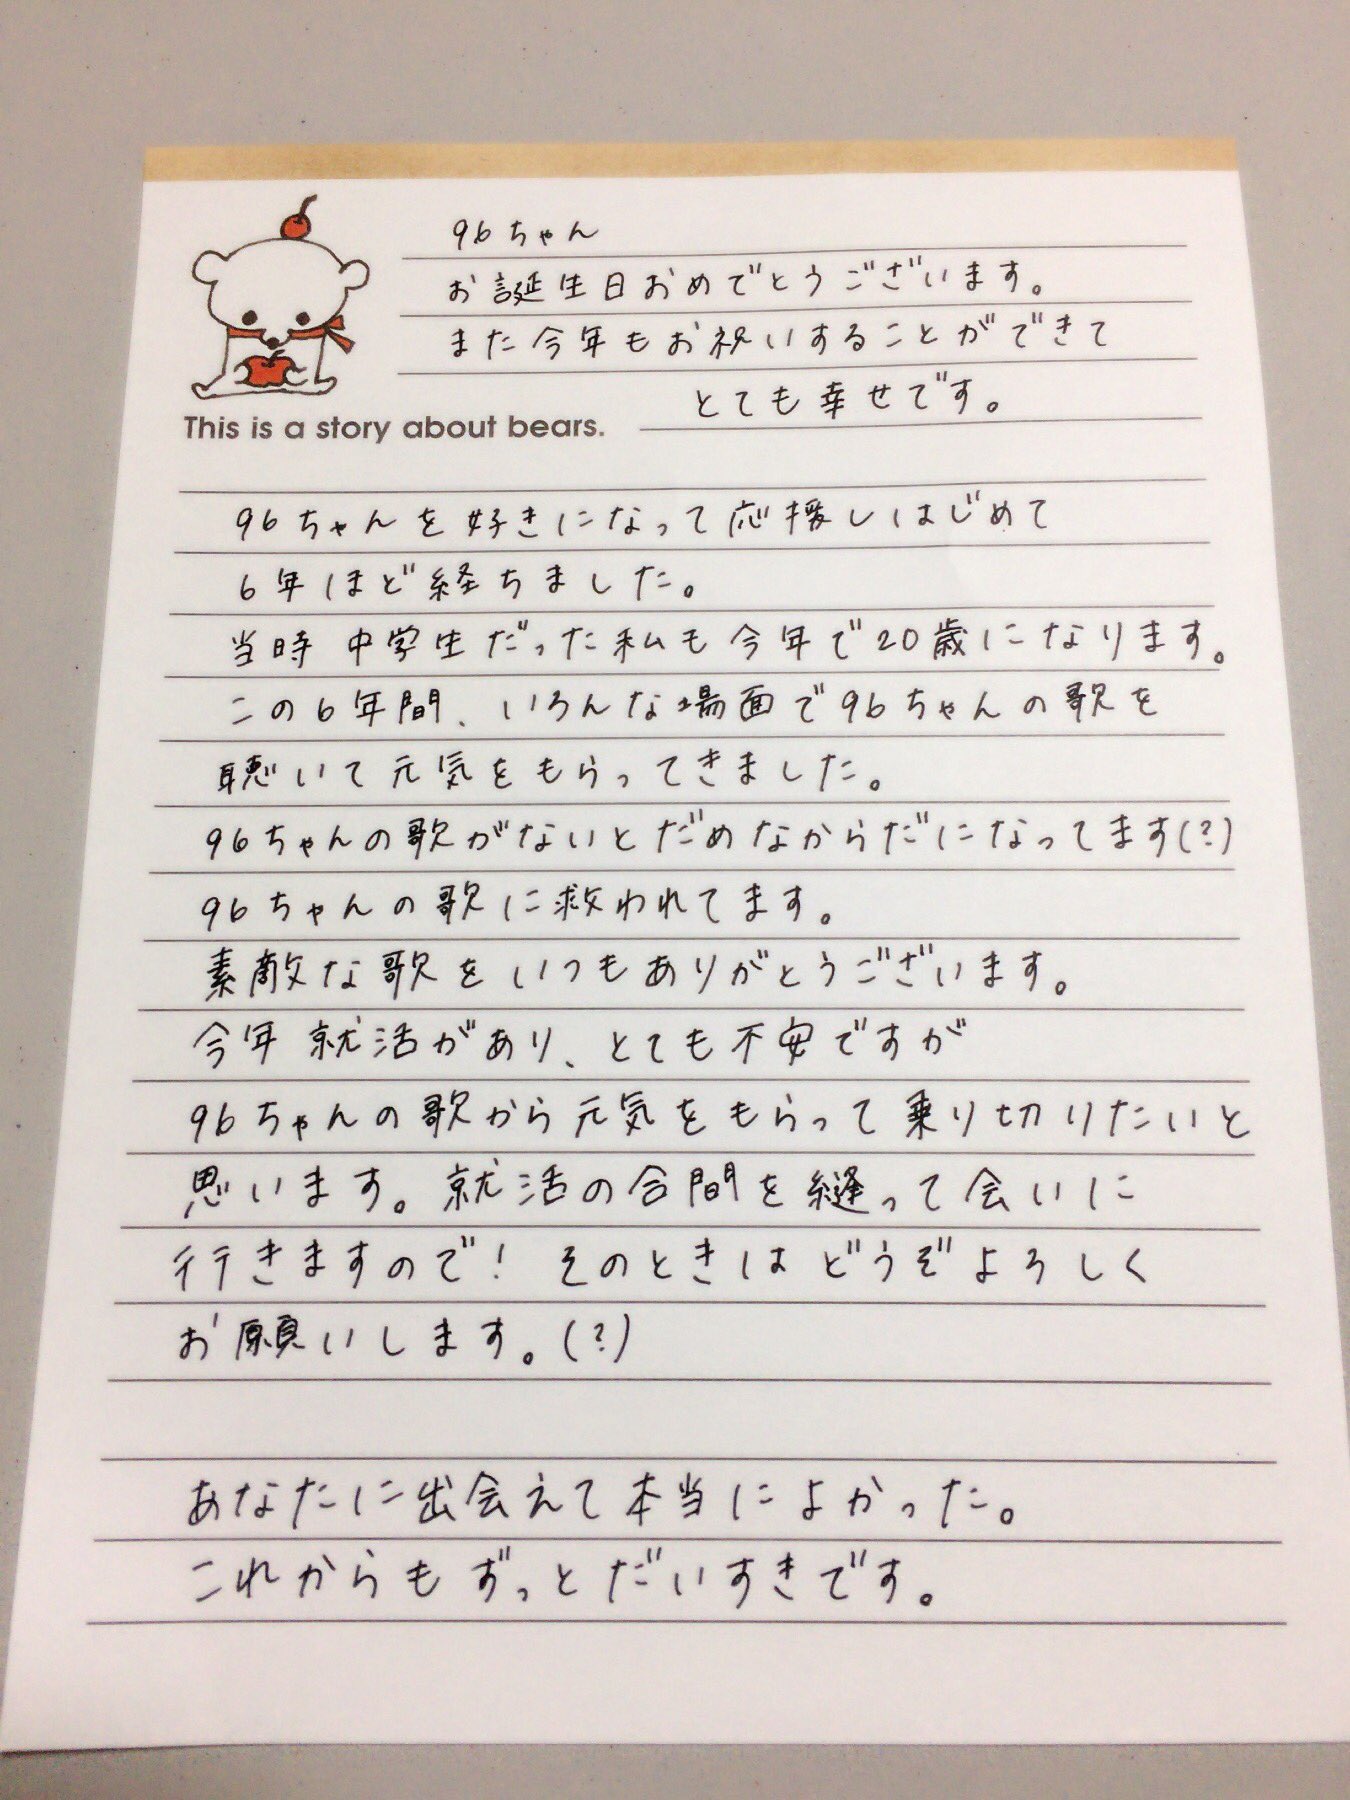 いづみ 96ちゃん 96 Neko あらためて お誕生日おめでとうございます 昨年同様 手書きでメッセージを書かせていただきました ラブレターです 素敵な1年になりますように 東京公演の差し入れとしてこの手紙持っていきます ちゃんと